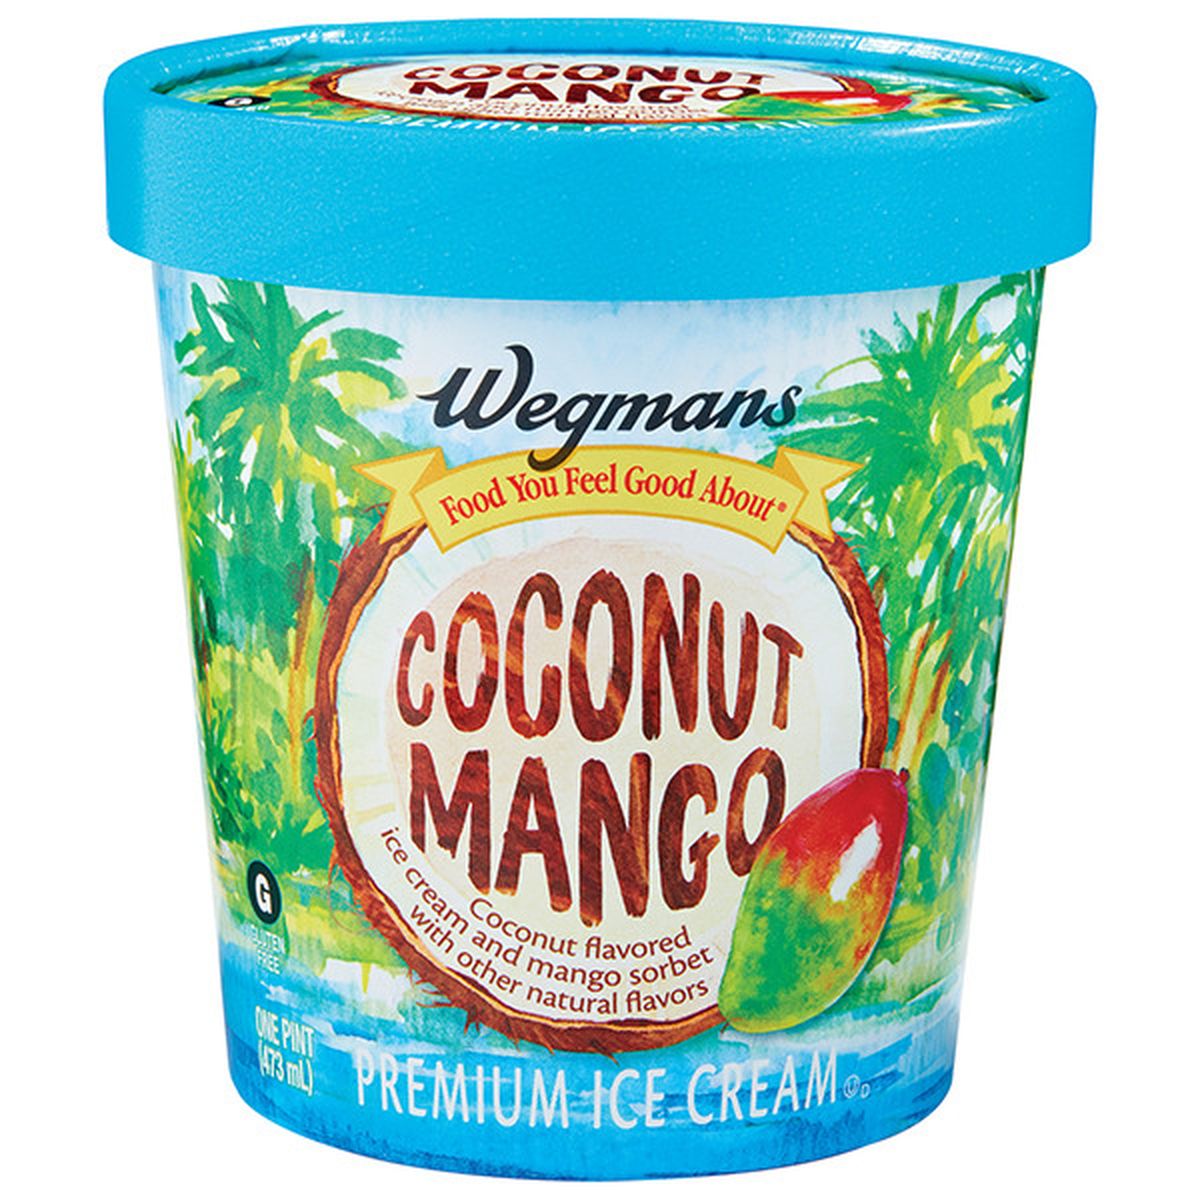 Calories in Wegmans Coconut Mango Premium Ice Cream